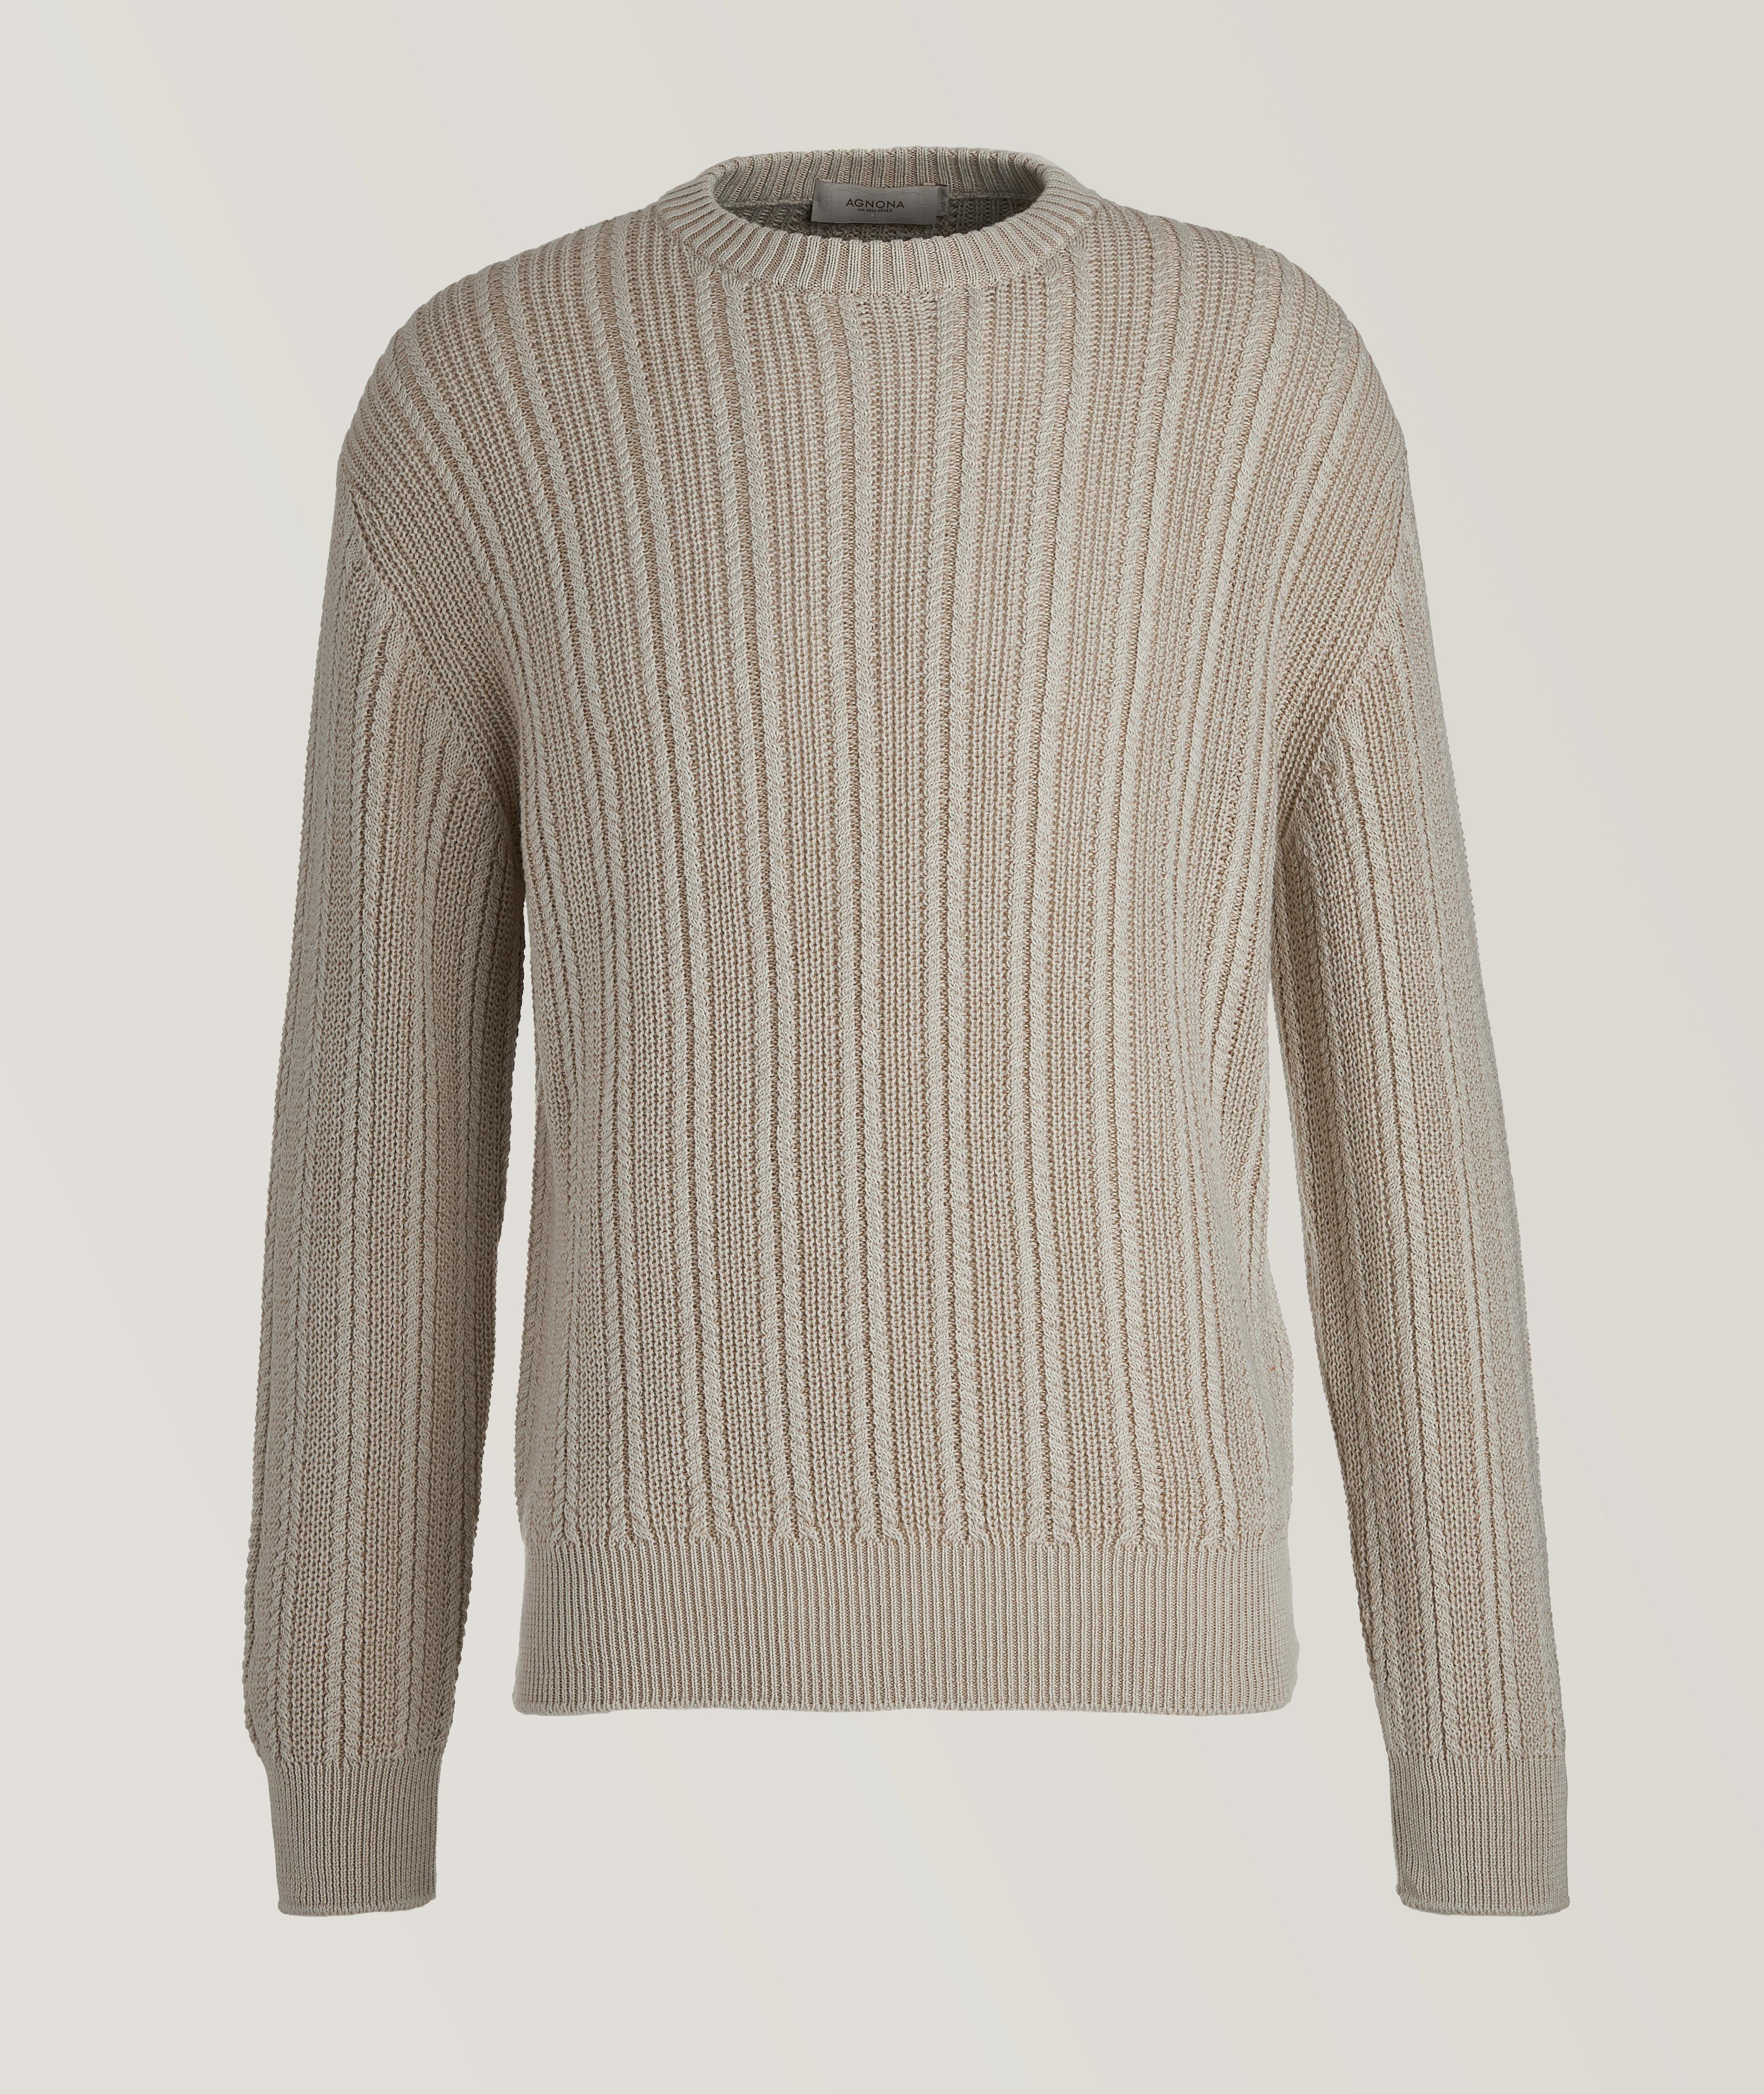 Pull en tricot torsadé de soie, de cachemire et de coton image 0